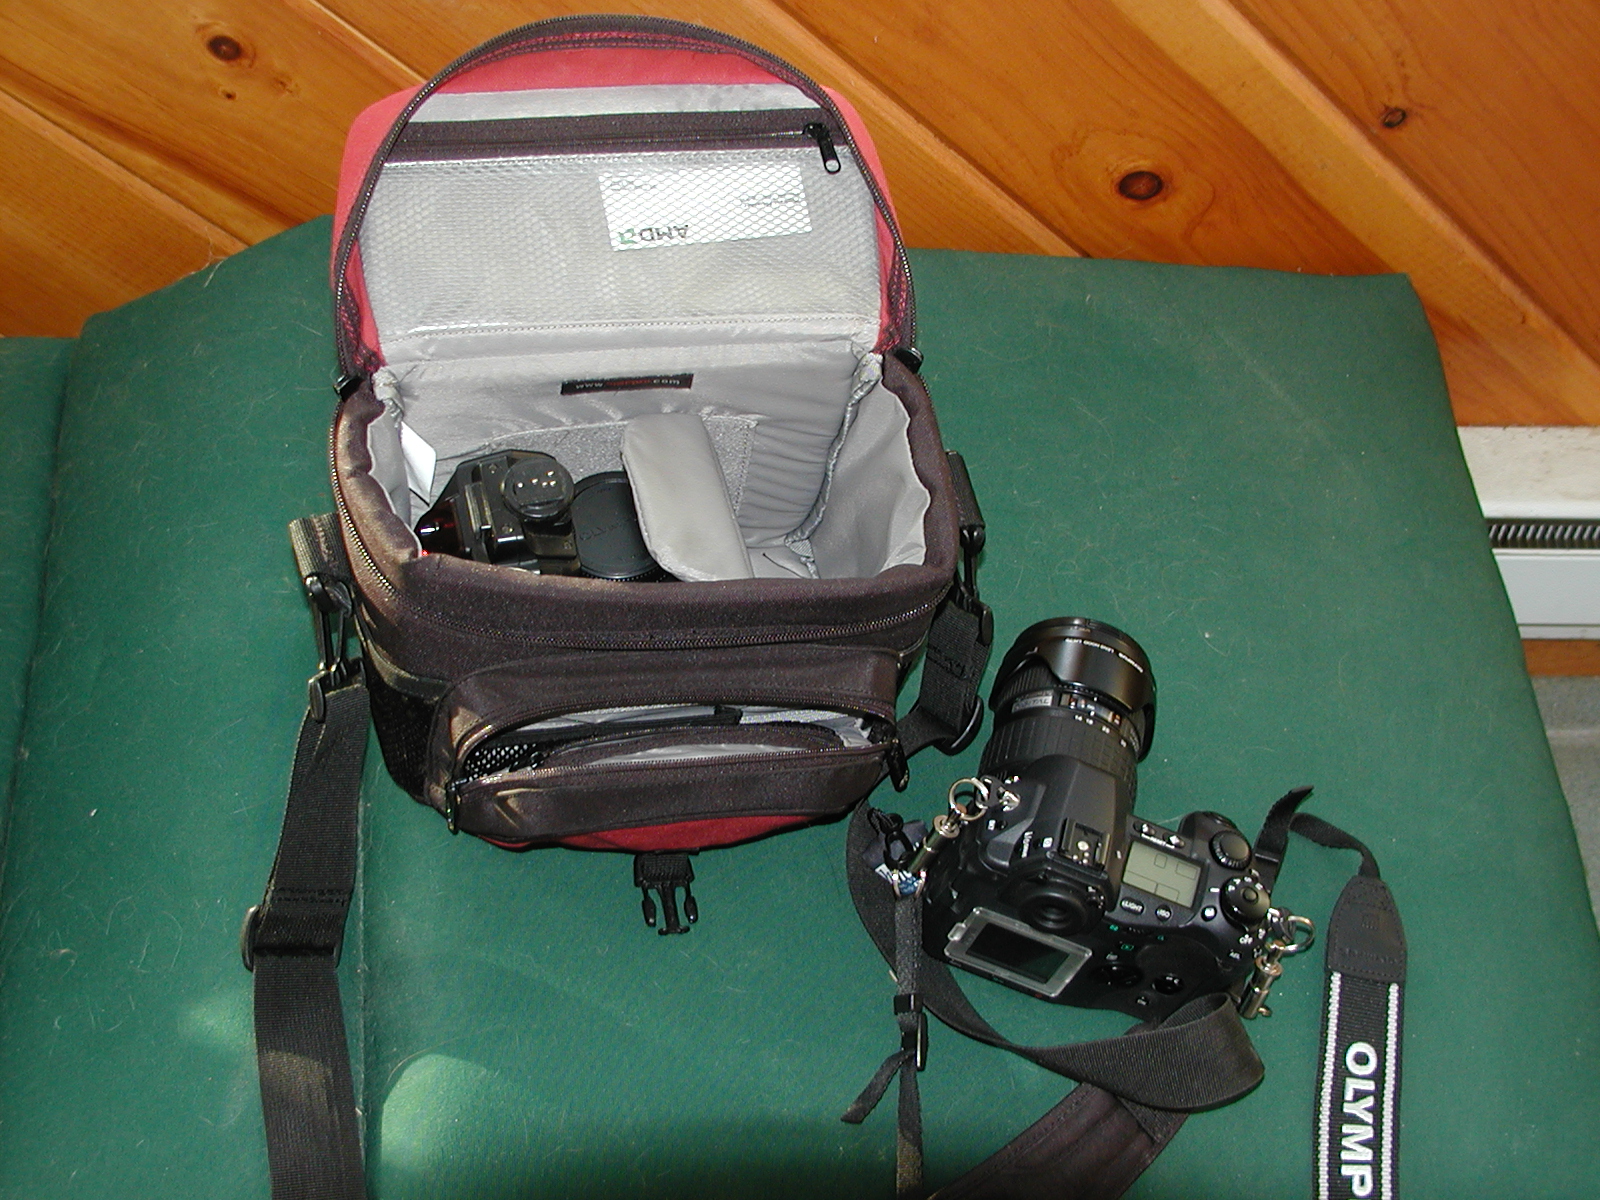 Lowepro Nova 1, E-1, 40-150mm lens, FL-50 flash